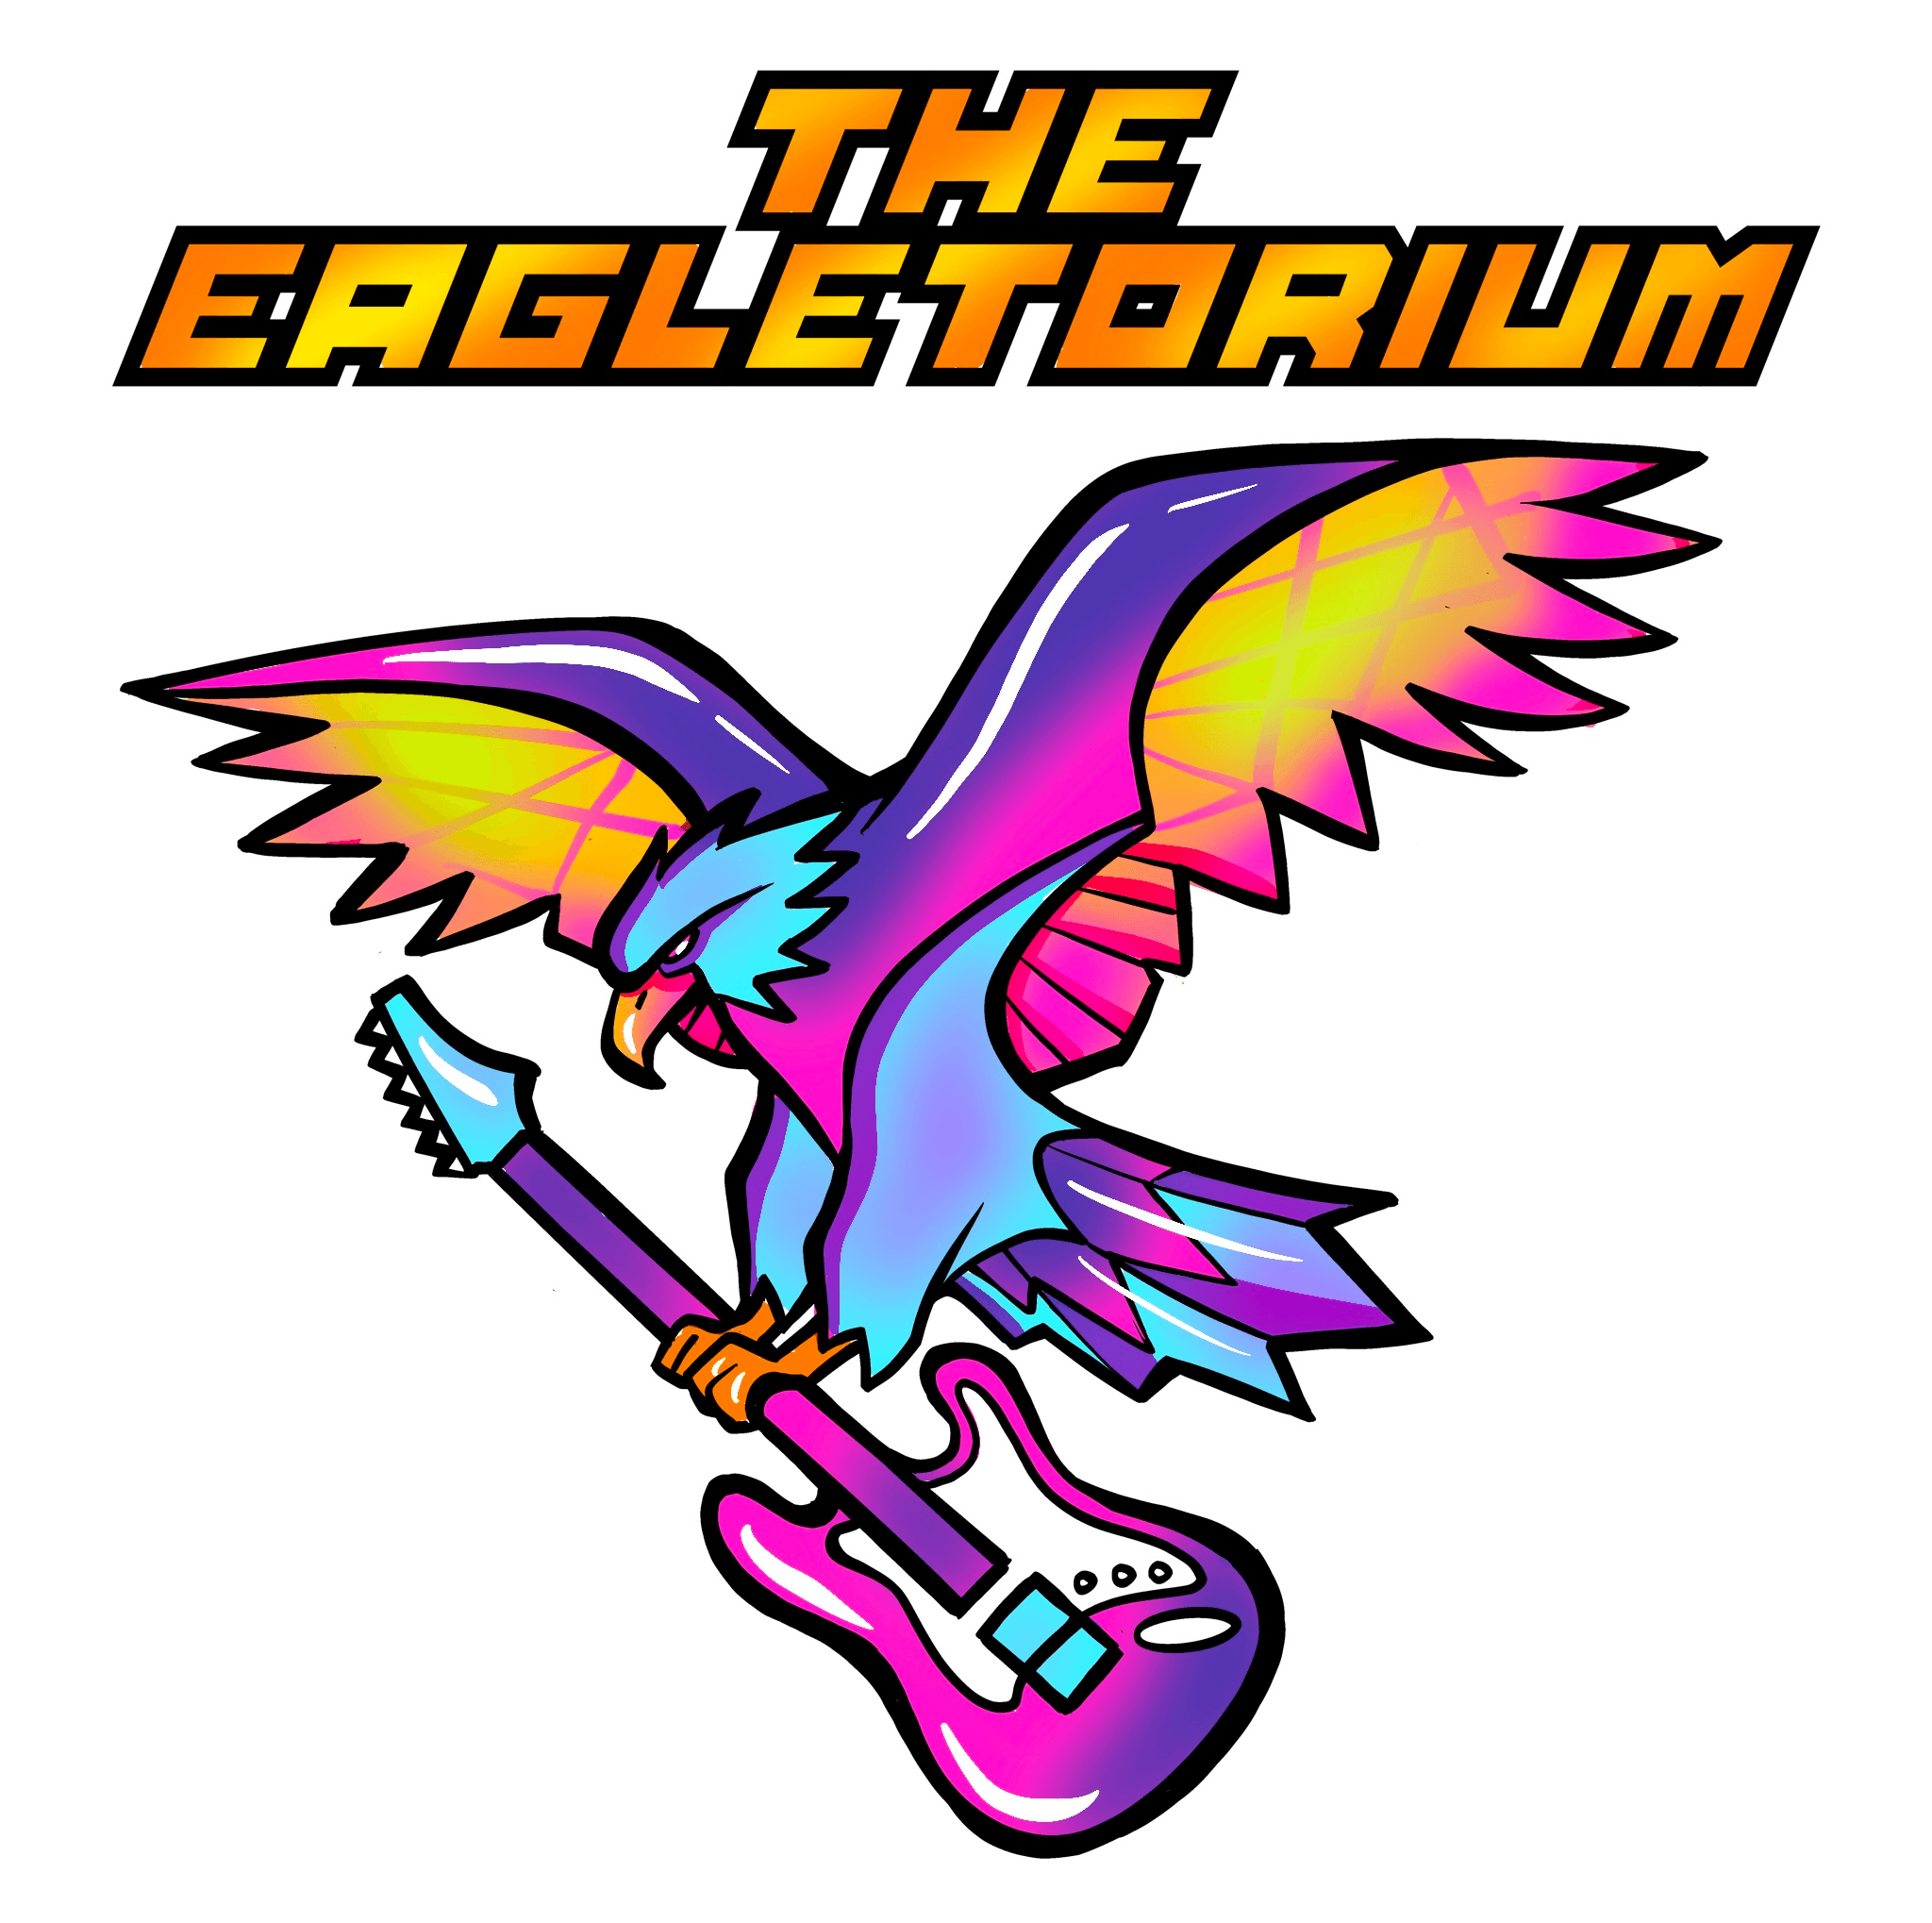 EagletoriumDome